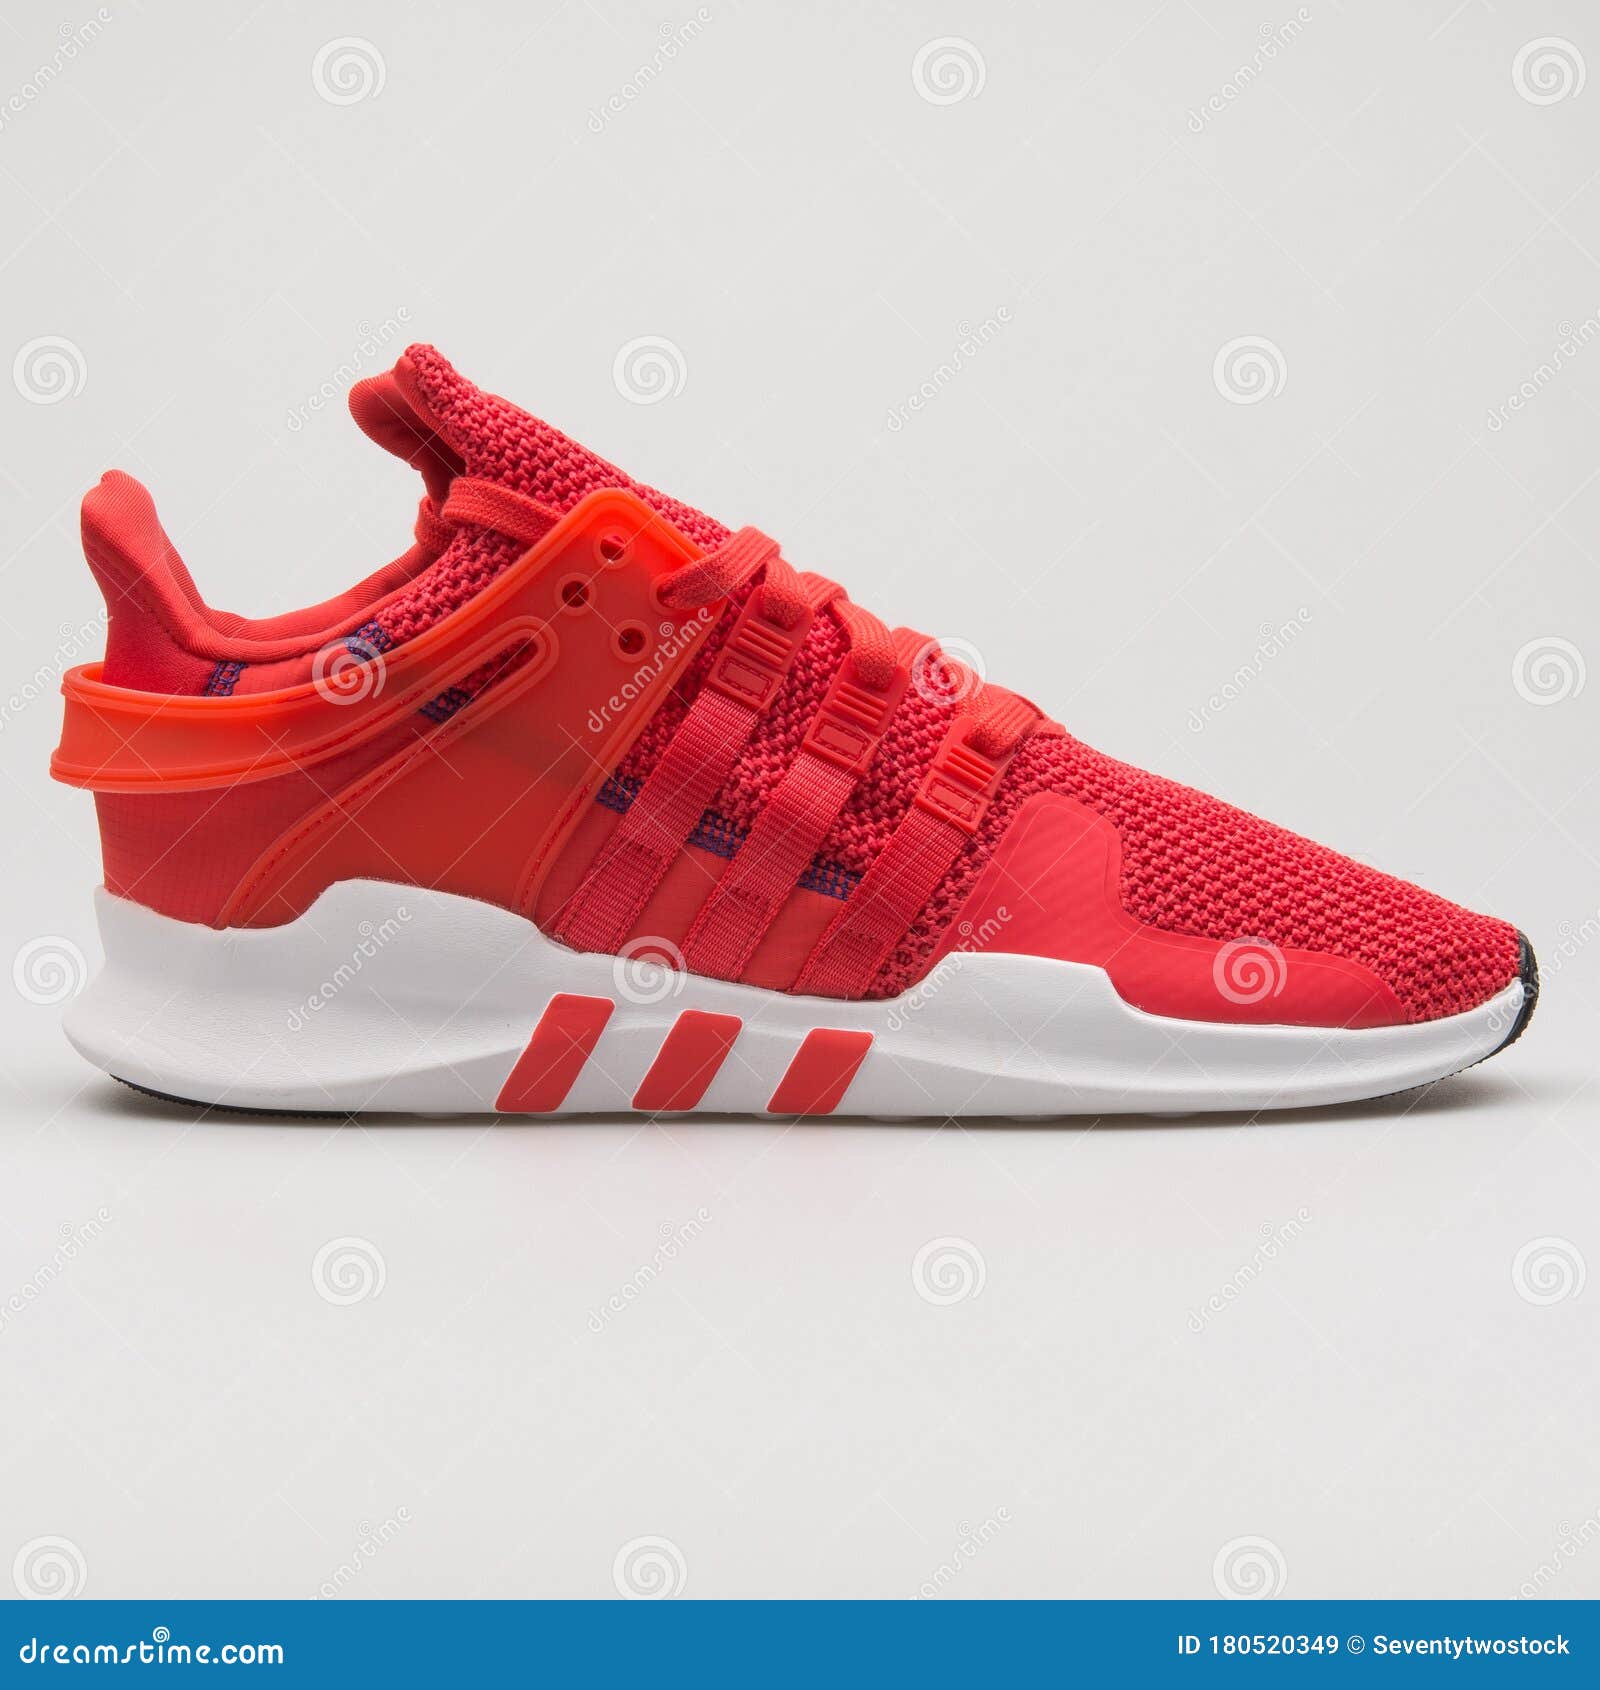 Adidas Eqt Support Adv Red Y White Sneaker de archivo editorial - Imagen de deportes, retrocesos: 180520349